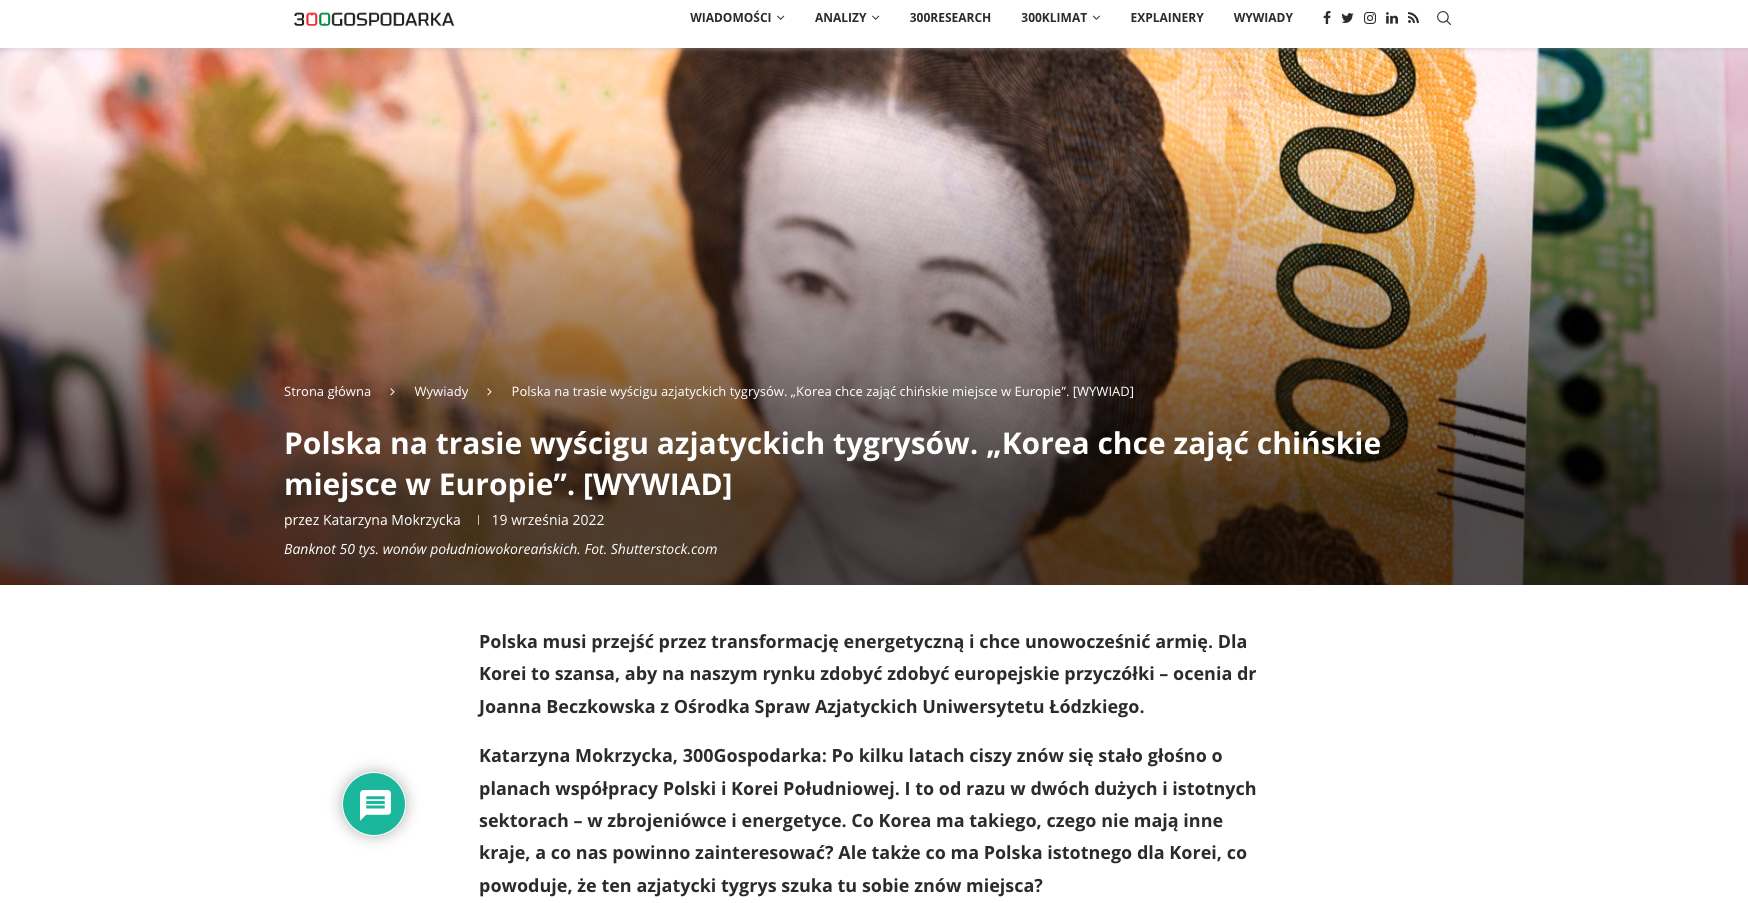 Zrzut ekranu strony internetowej portalu 300 gospodarka/Screenshot of the 300 gospodarka website